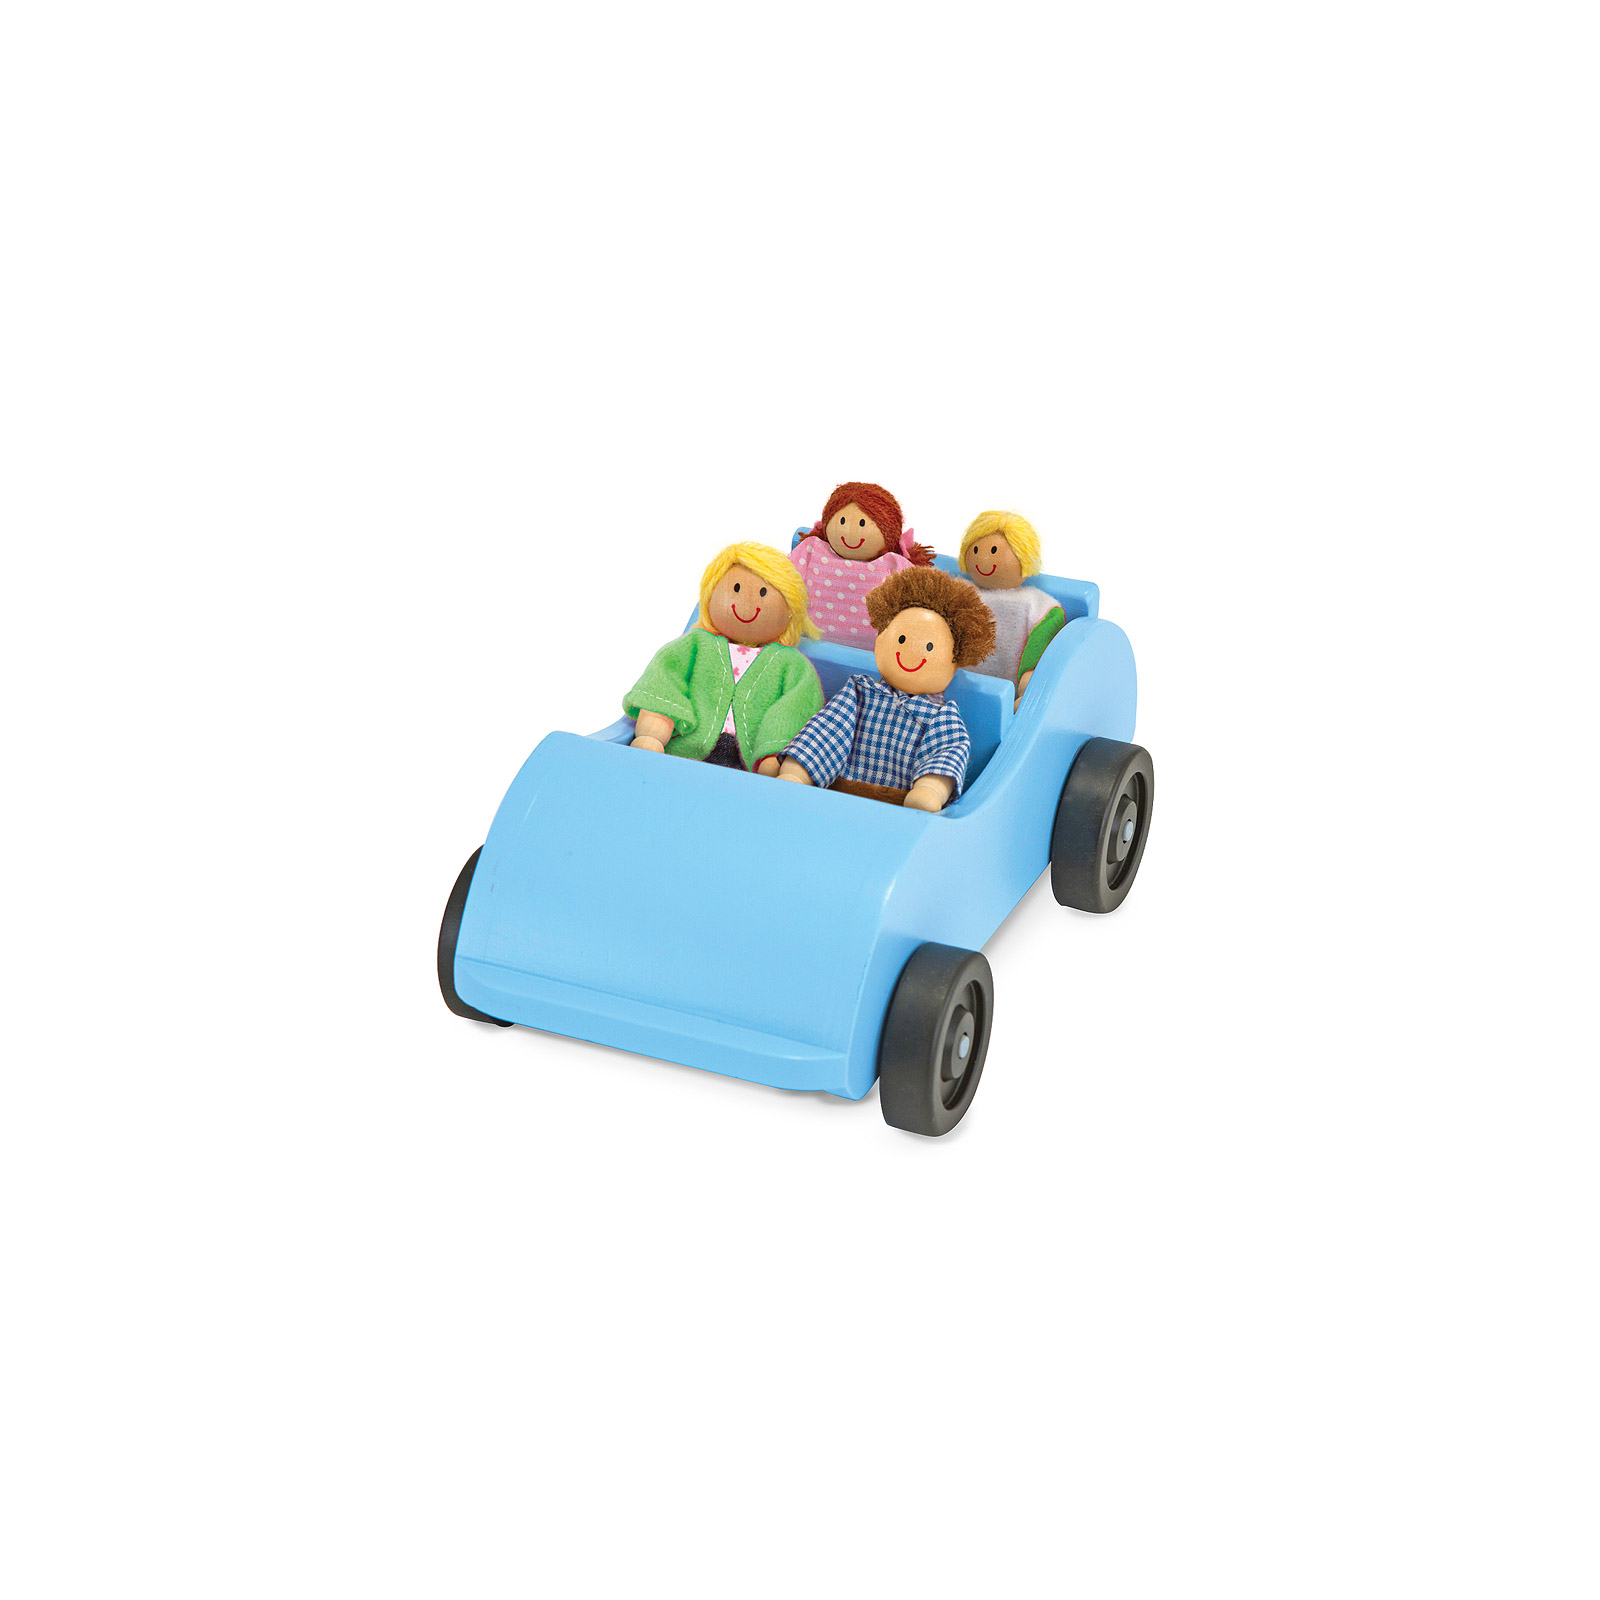 Развивающая игрушка Melissa&Doug Дорожная машинка с куклами (MD2463)